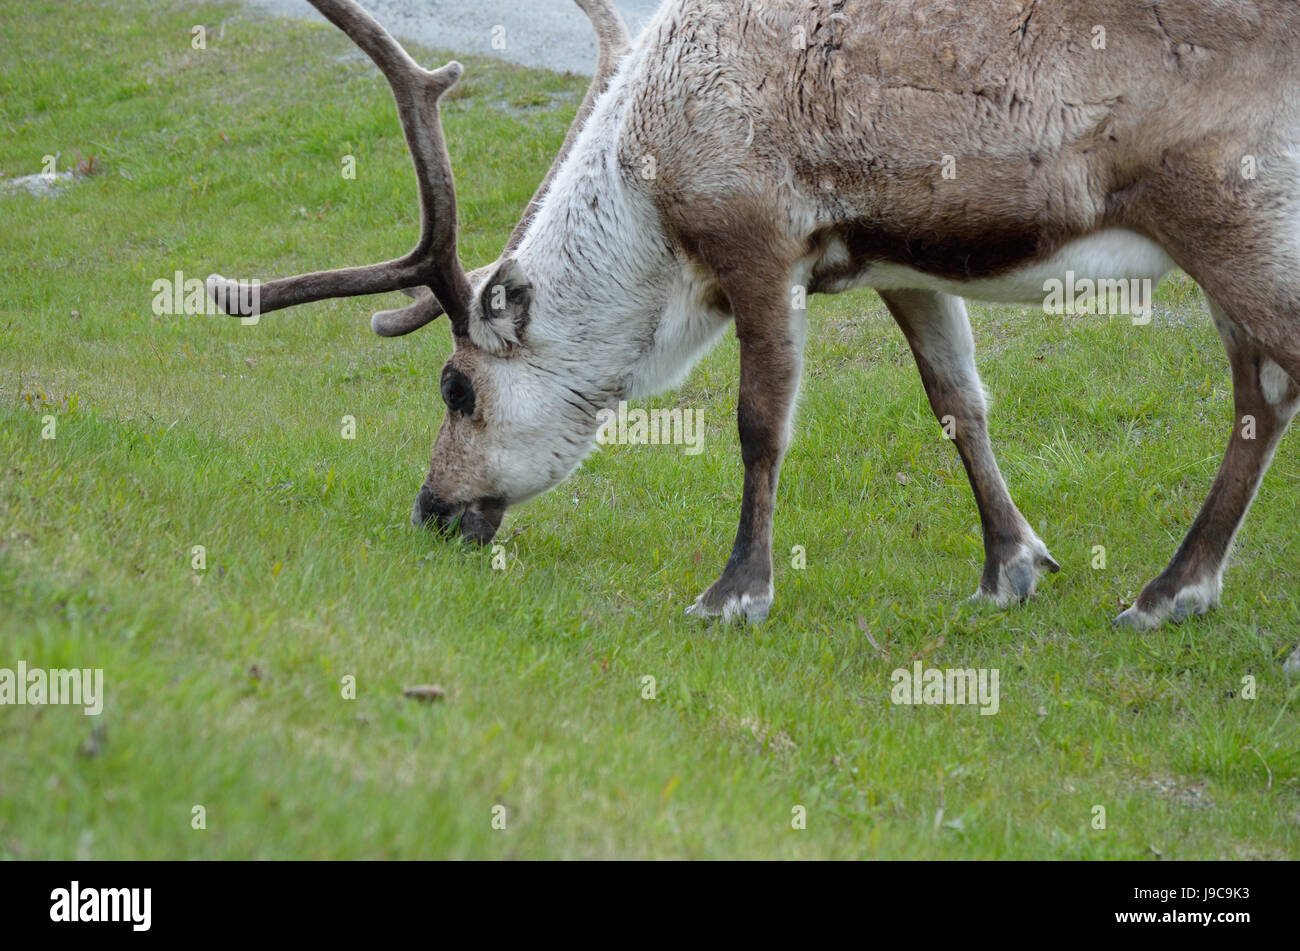 Alimentación y pastoreo de renos en la pasto verde closeup Foto de stock